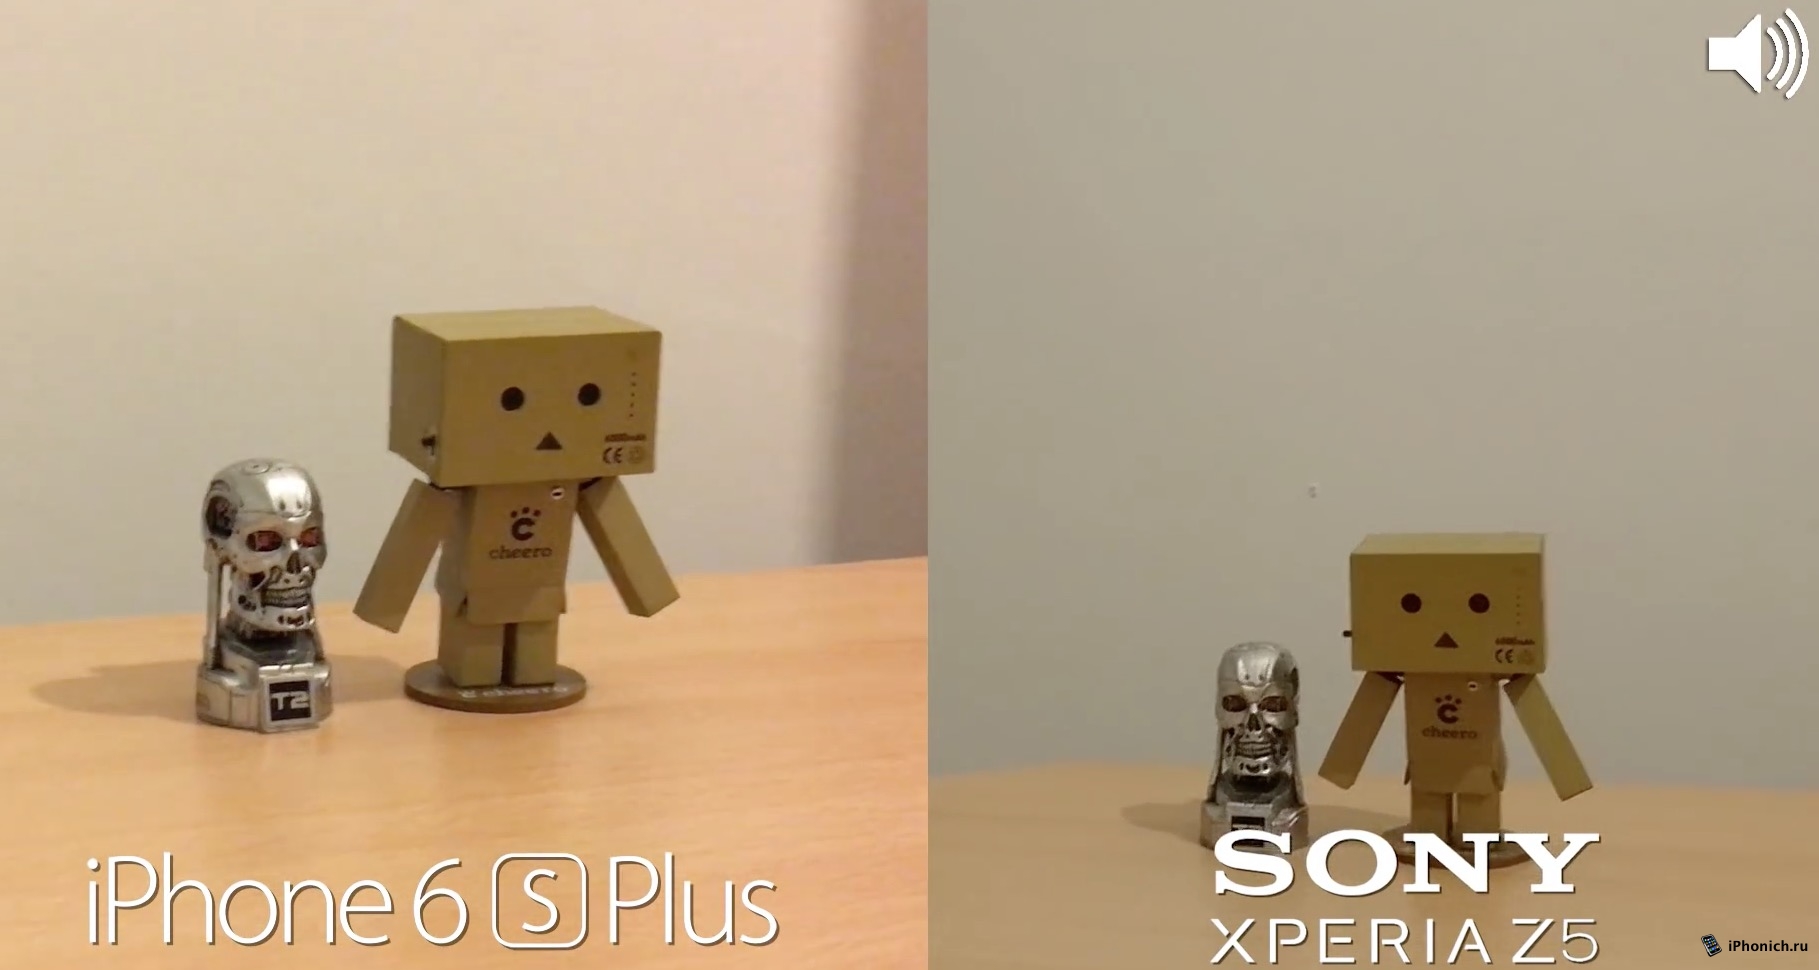 Sony Xperia Z5 vs iPhone 6s Plus: Сравнение качества фото и видео